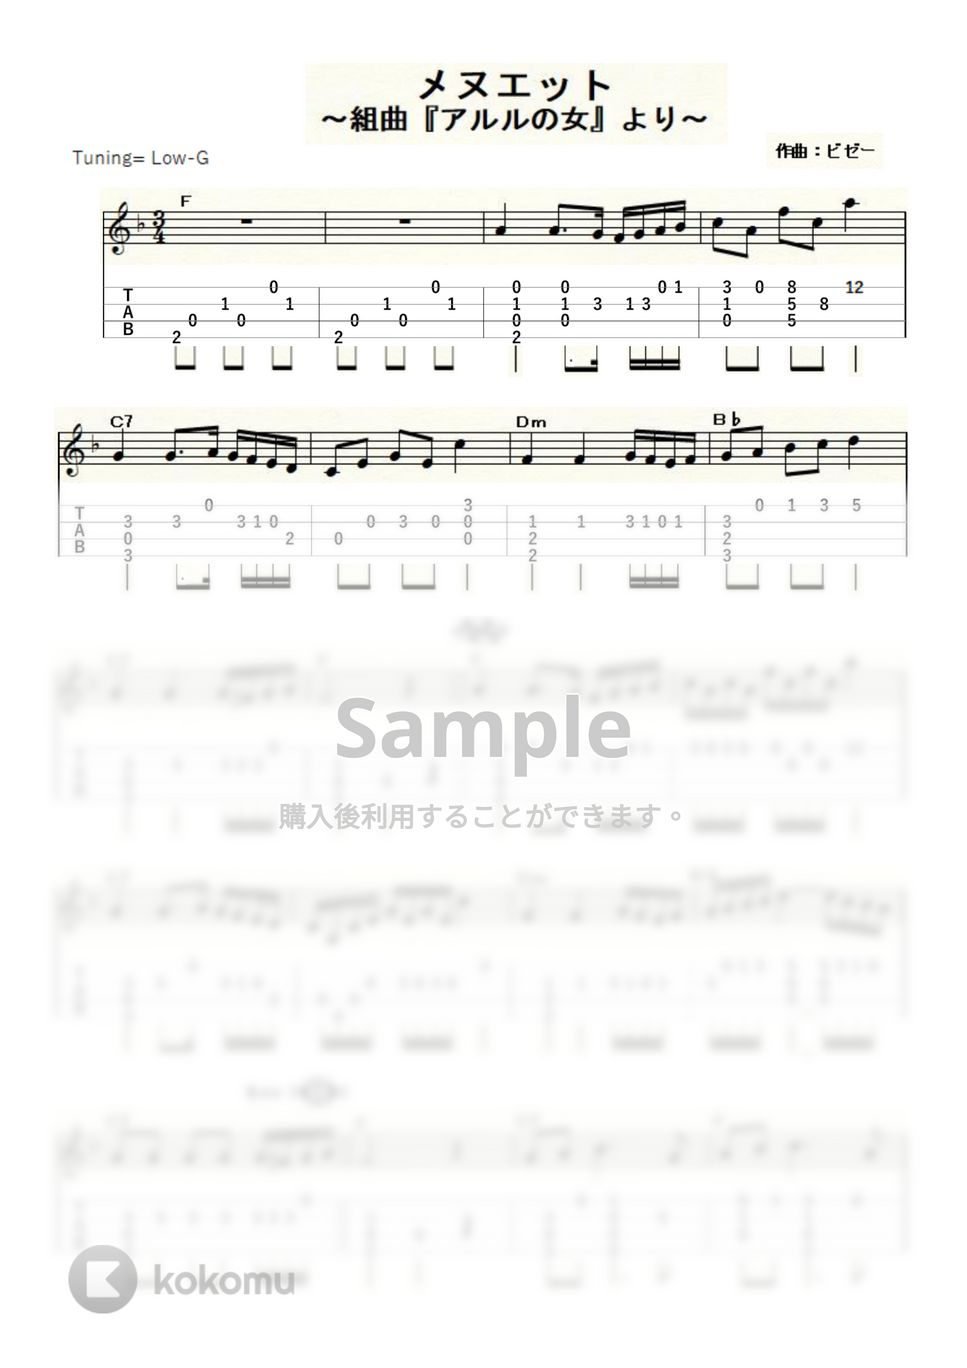 ビゼー - 「アルルの女」よりメヌエット (ｳｸﾚﾚｿﾛ / Low-G / 中級) by ukulelepapa